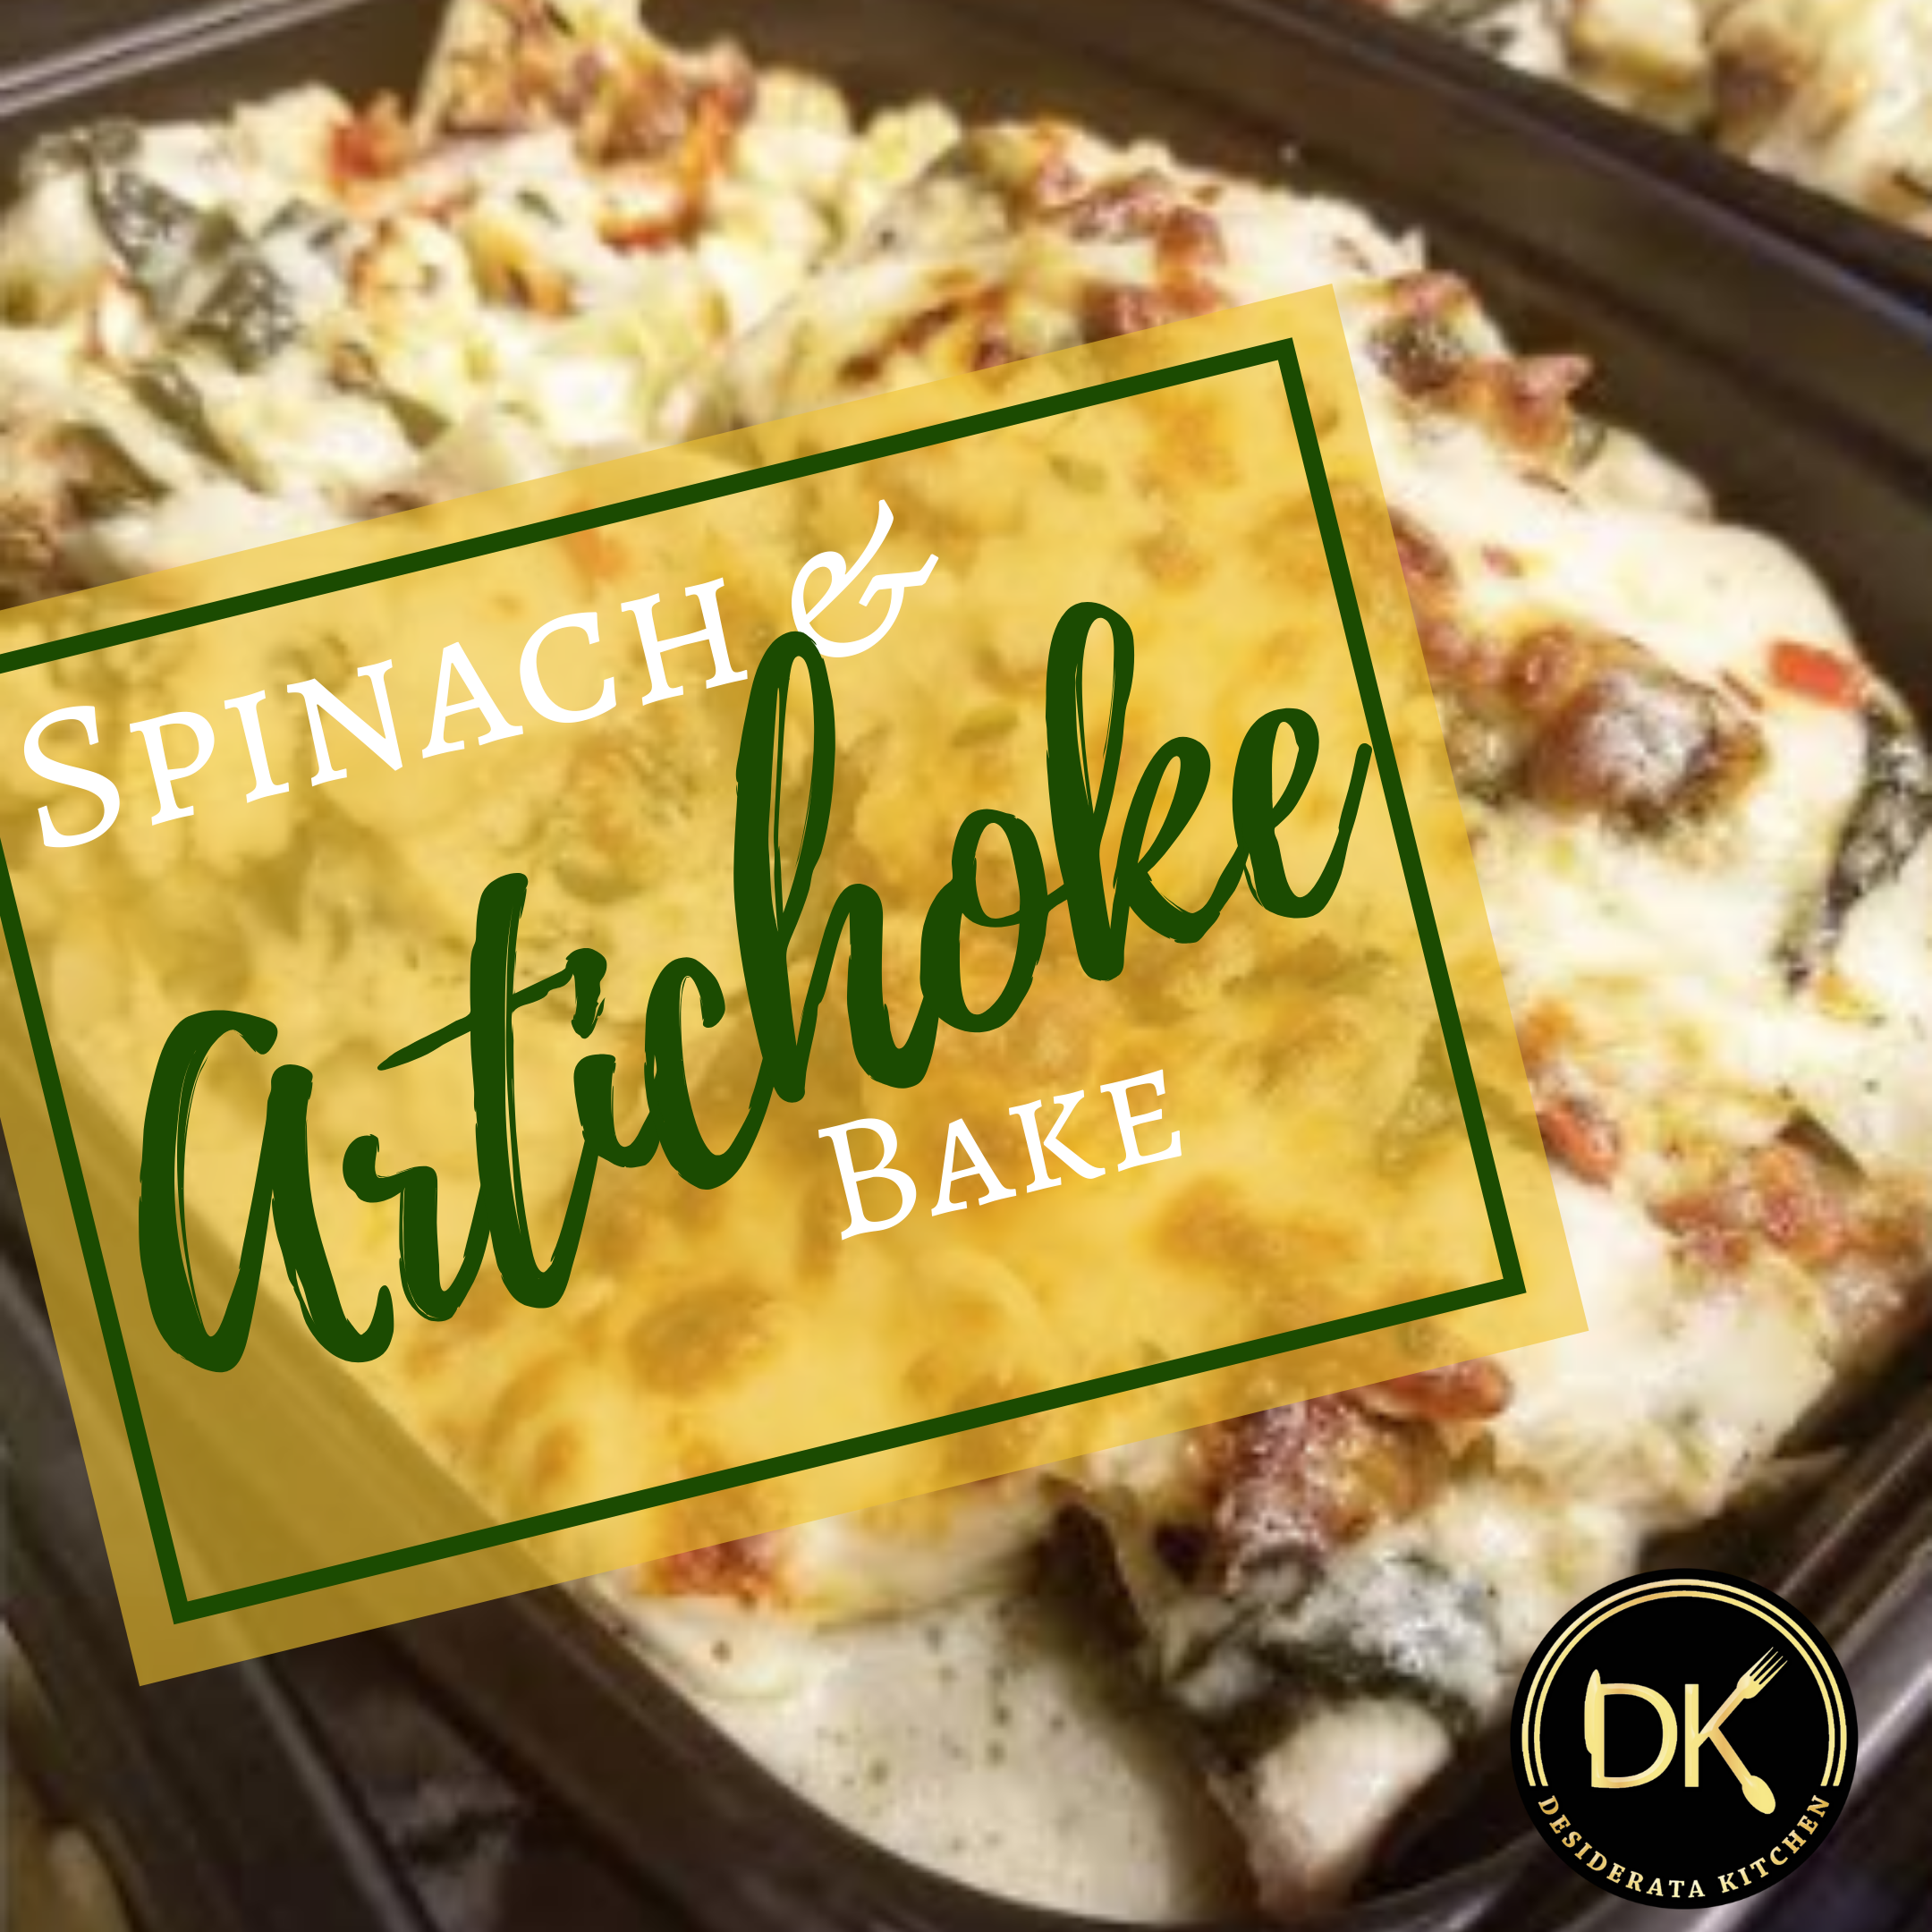 Spinach & Artichoke Chicken Bake